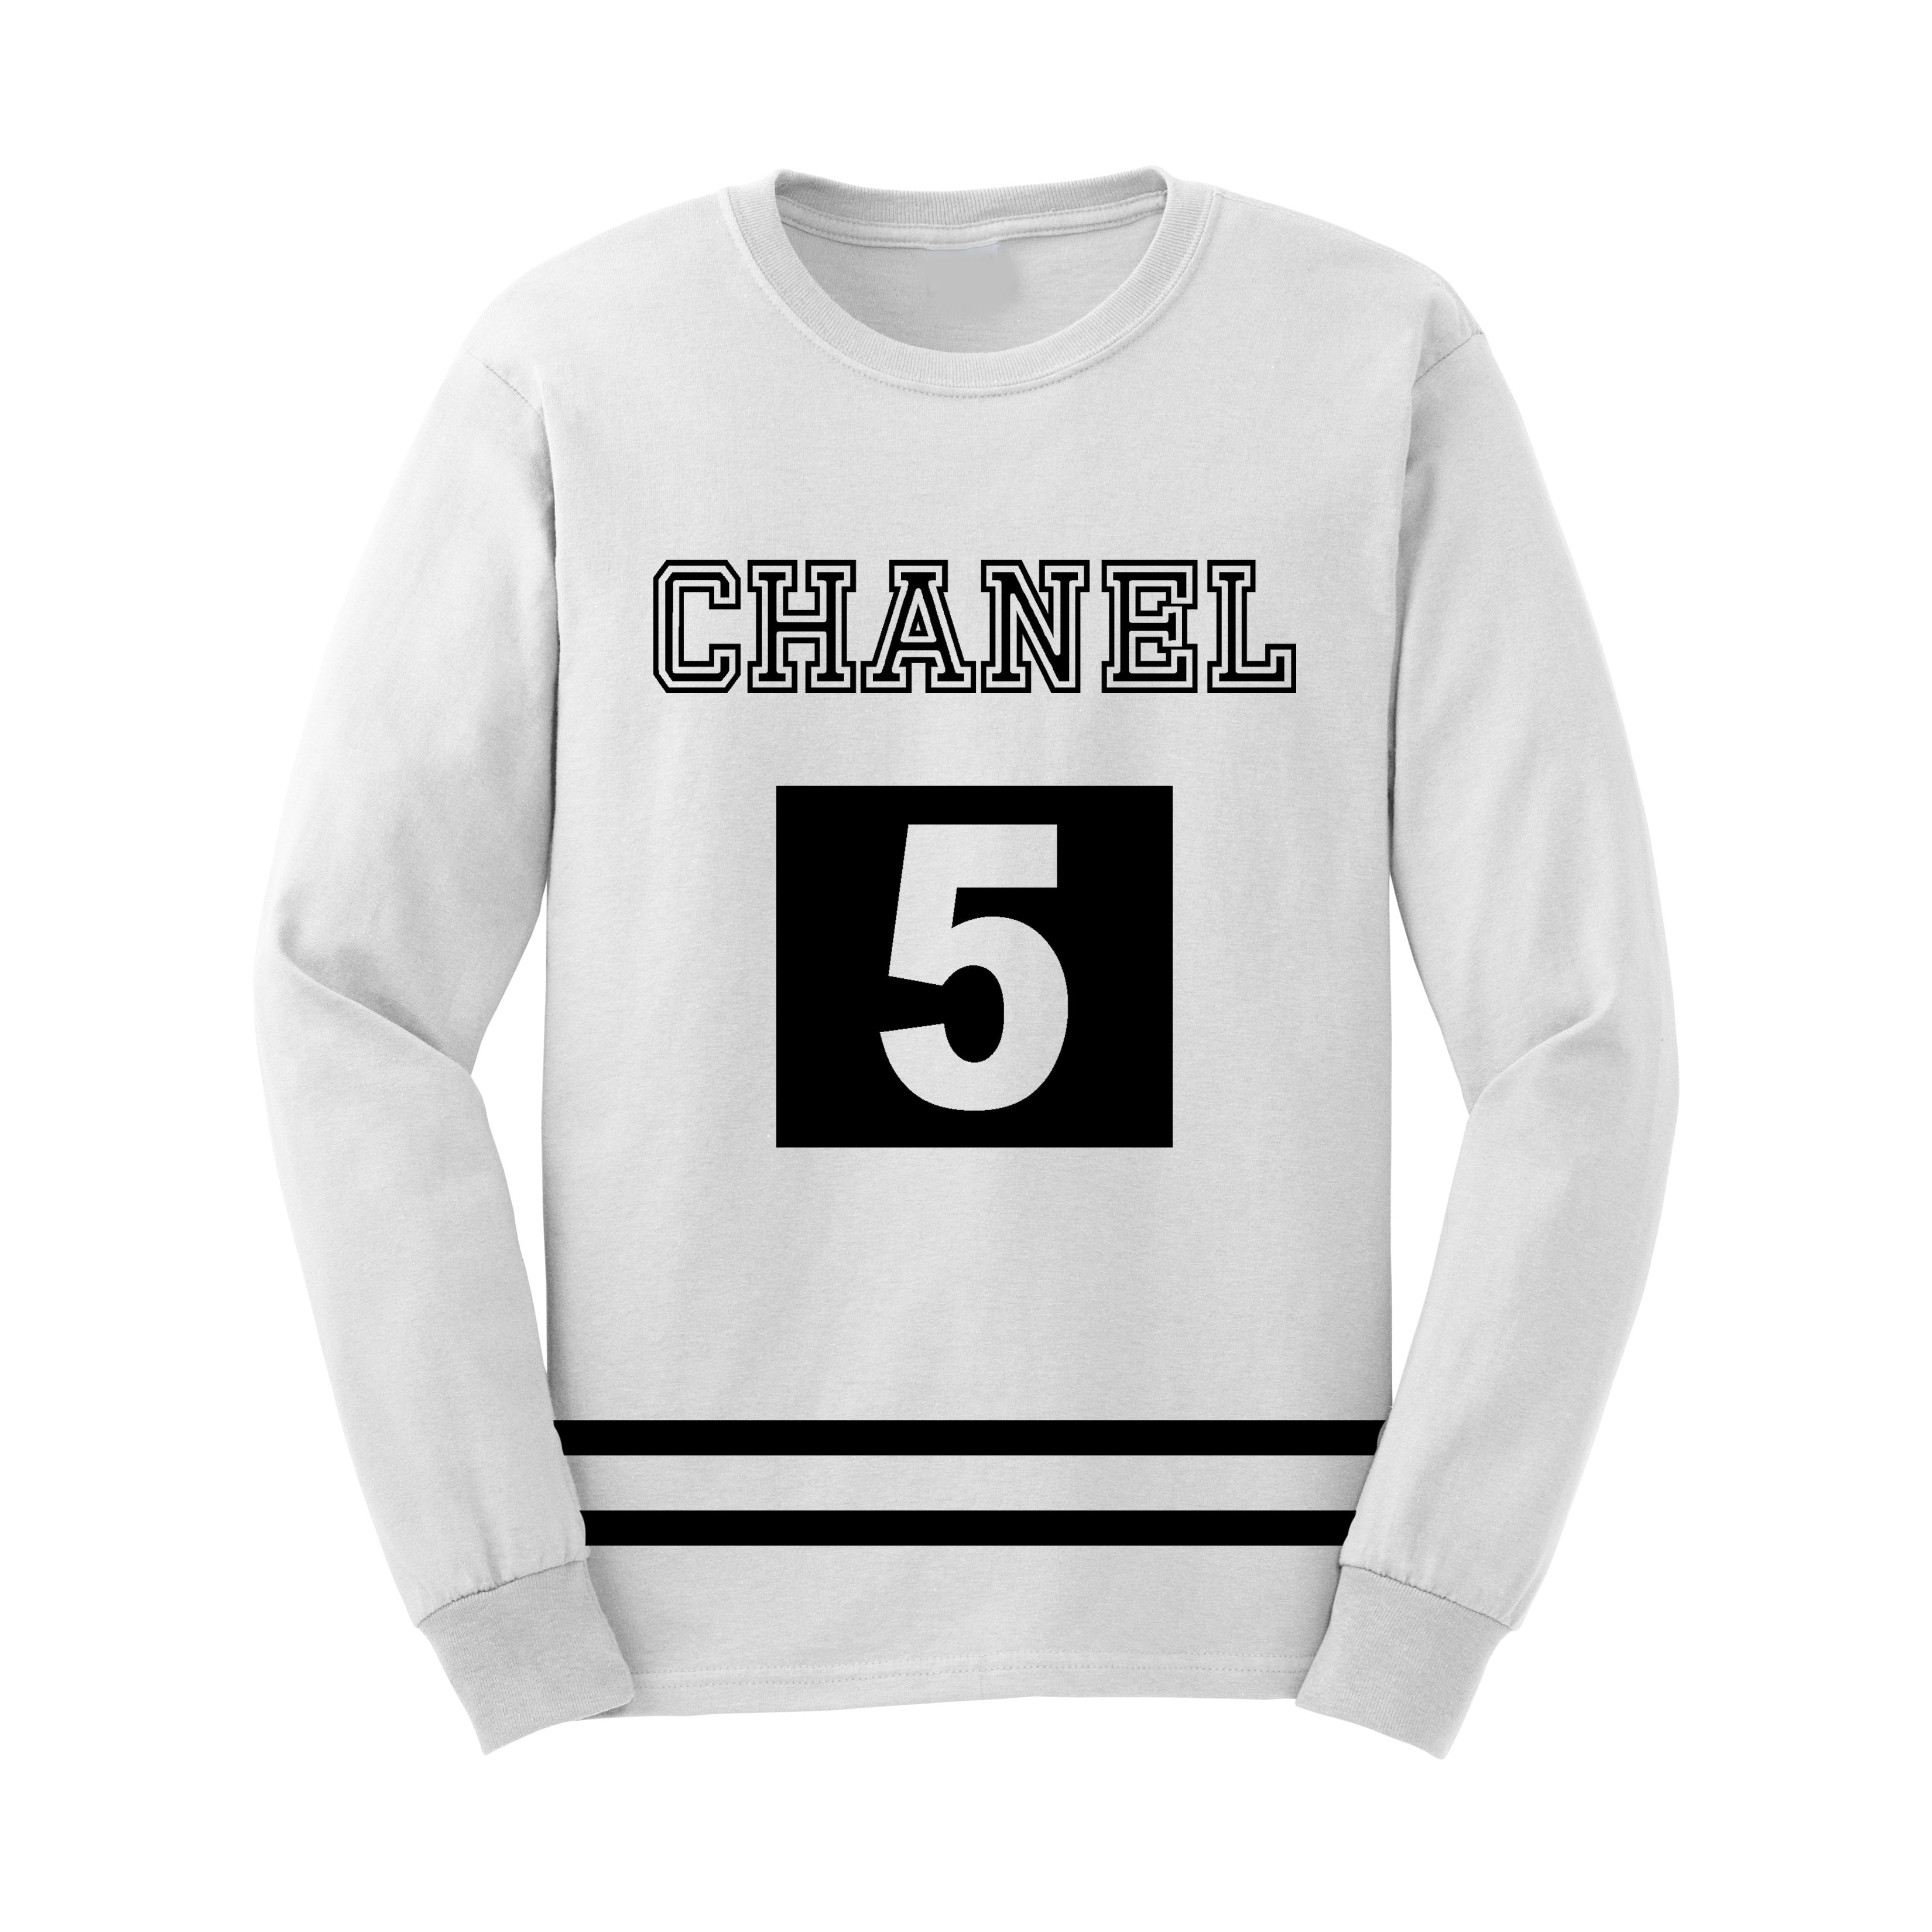 Fashion Coco Chanel Inspired CC T-Shirt Vinyl cc shirt